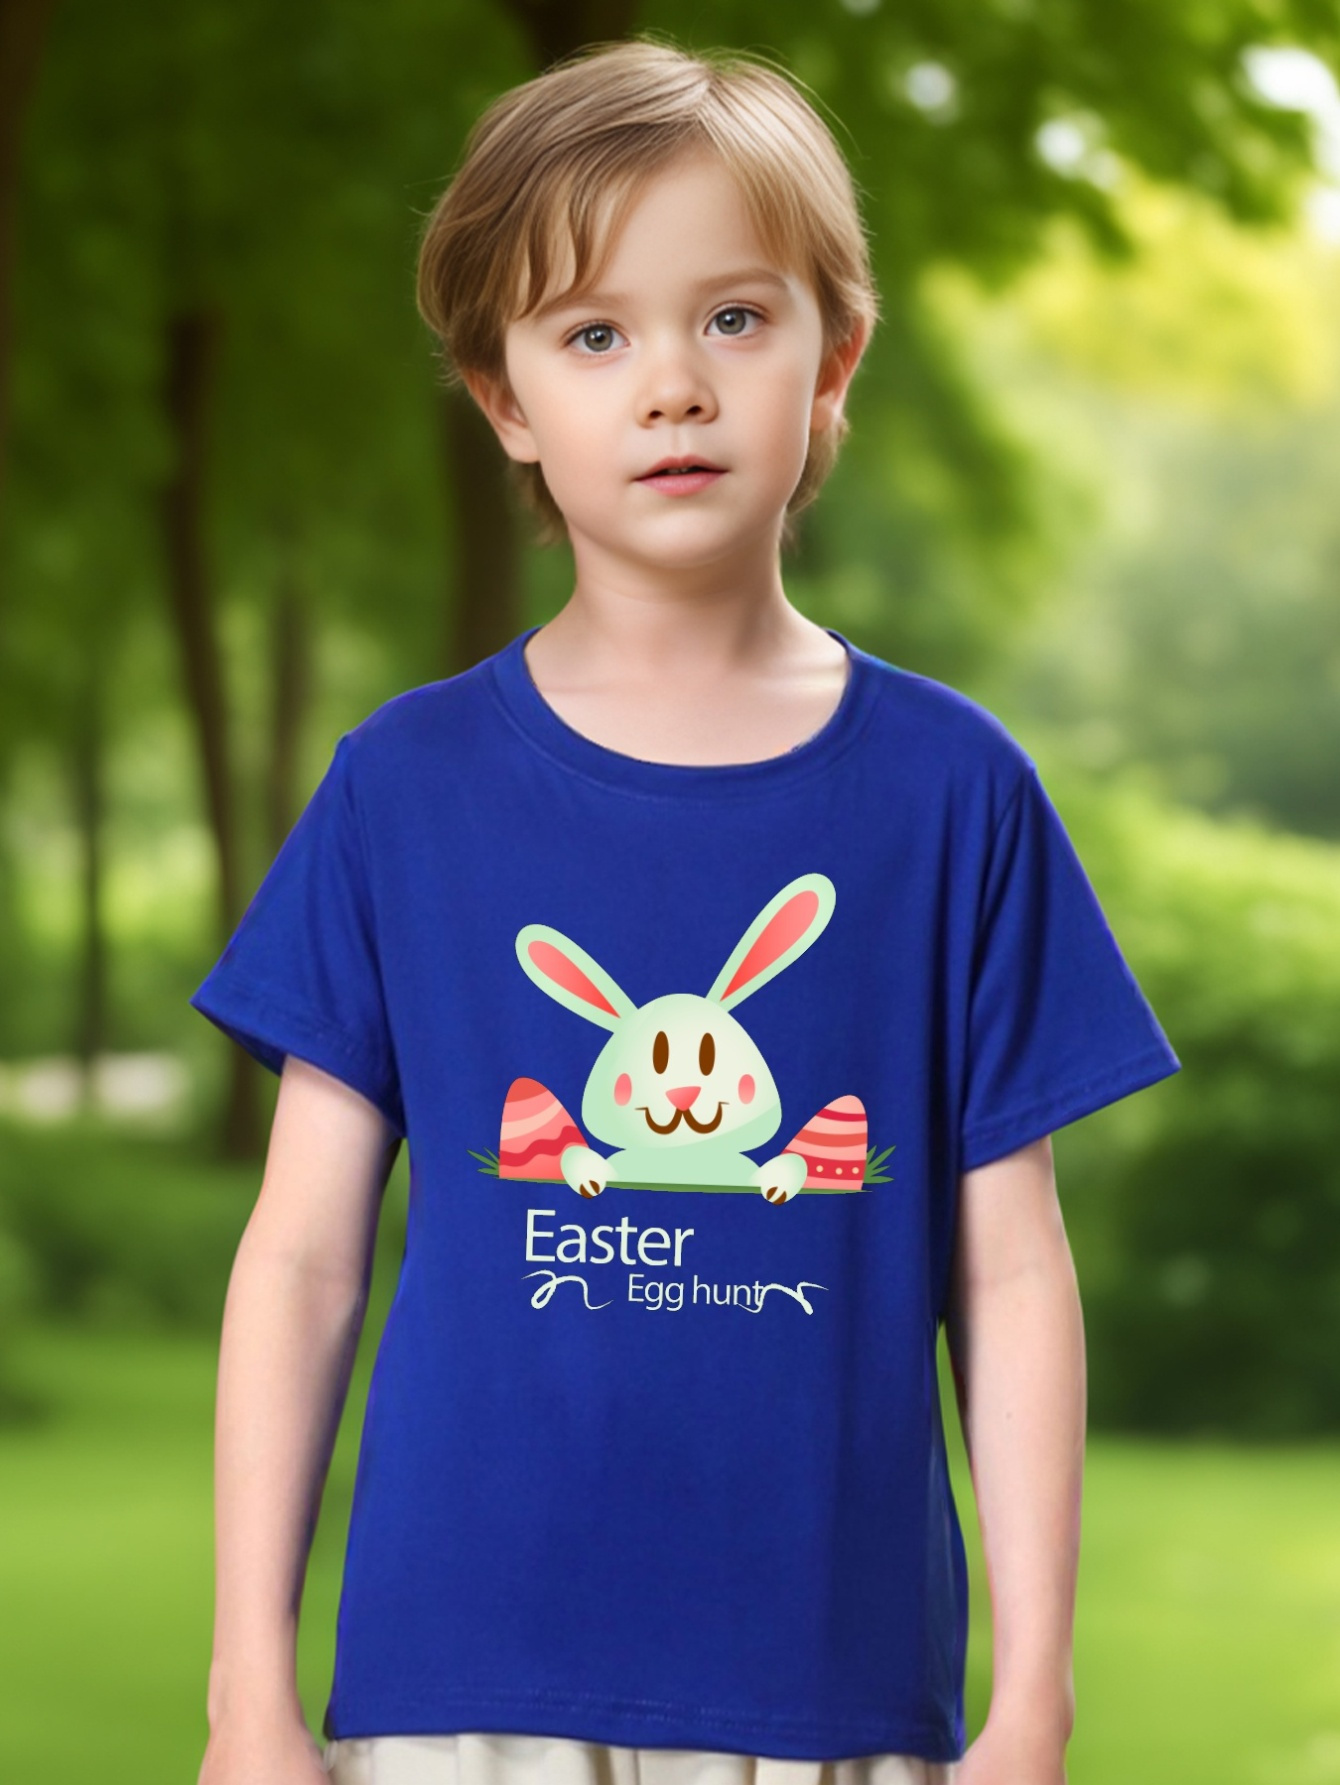 New Summer Men's T-Shirt 100% Cotton Rabbit Print Short Sleeve